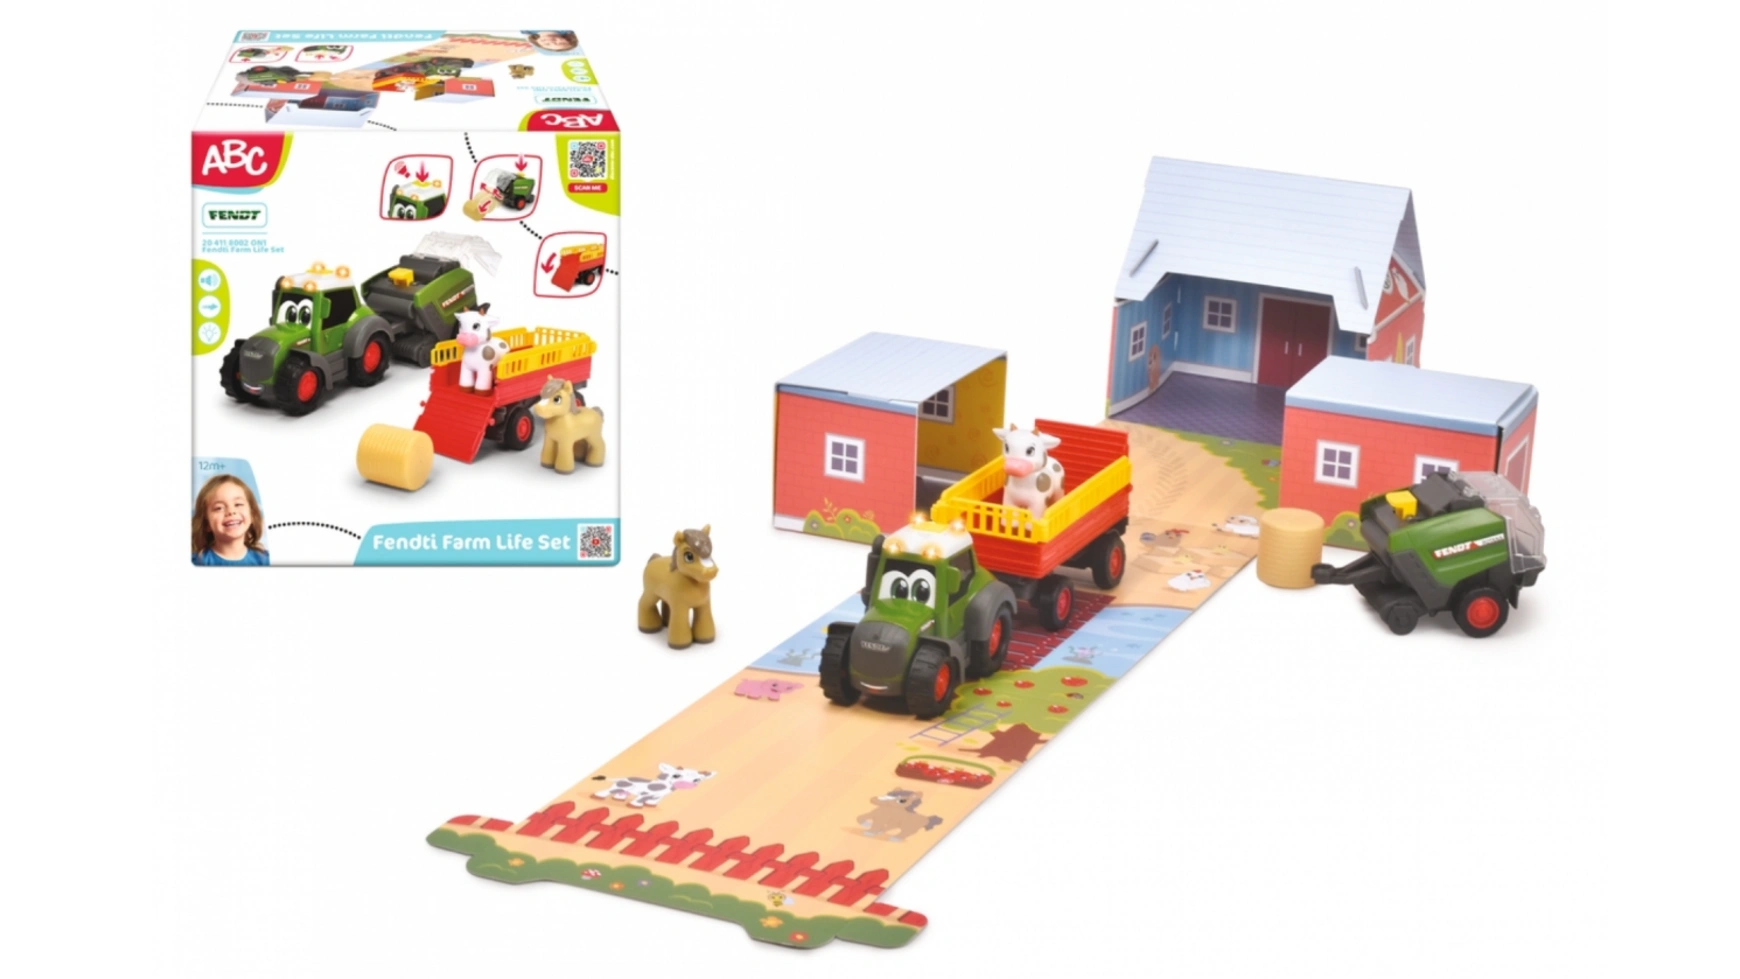 цена Dickie Toys трактор ABC Fendt с прицепом, пресс-подборщиком для сена и животными (набор диорамы)